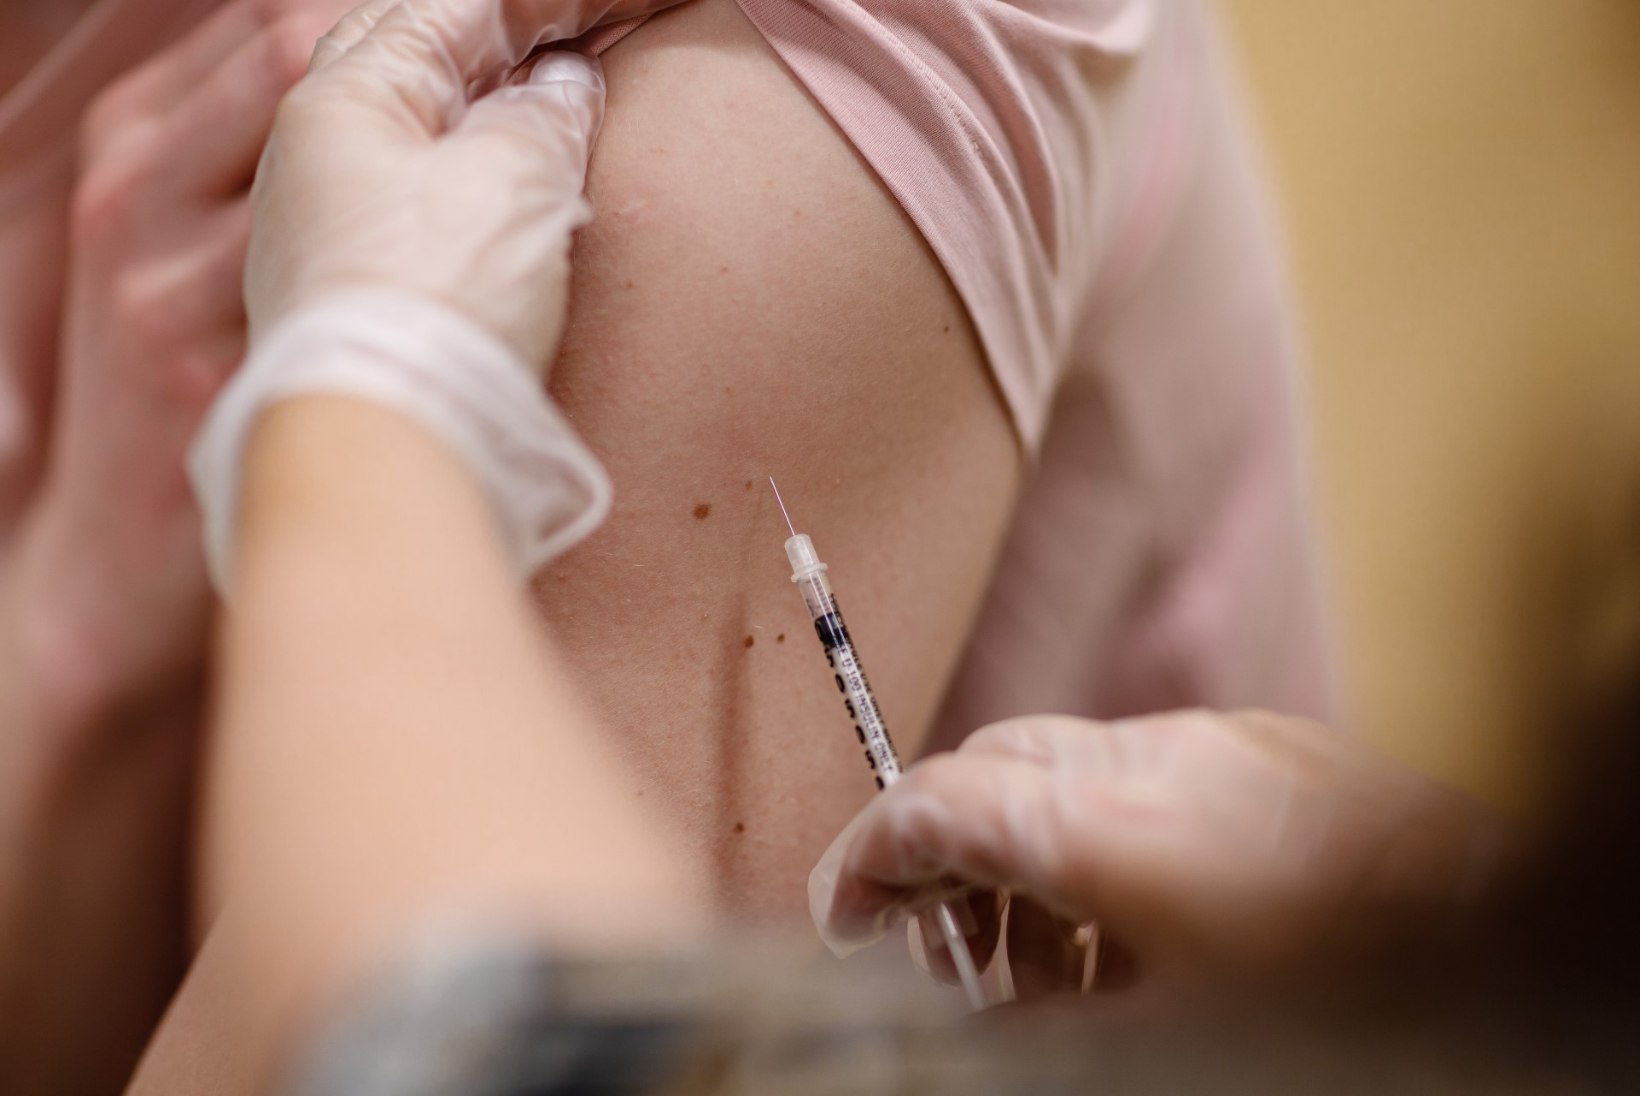 Vaktsiin vallandas noorel naisel raske haiguse: „Miks just mina? Miks toodi selline vaktsiin turule?“